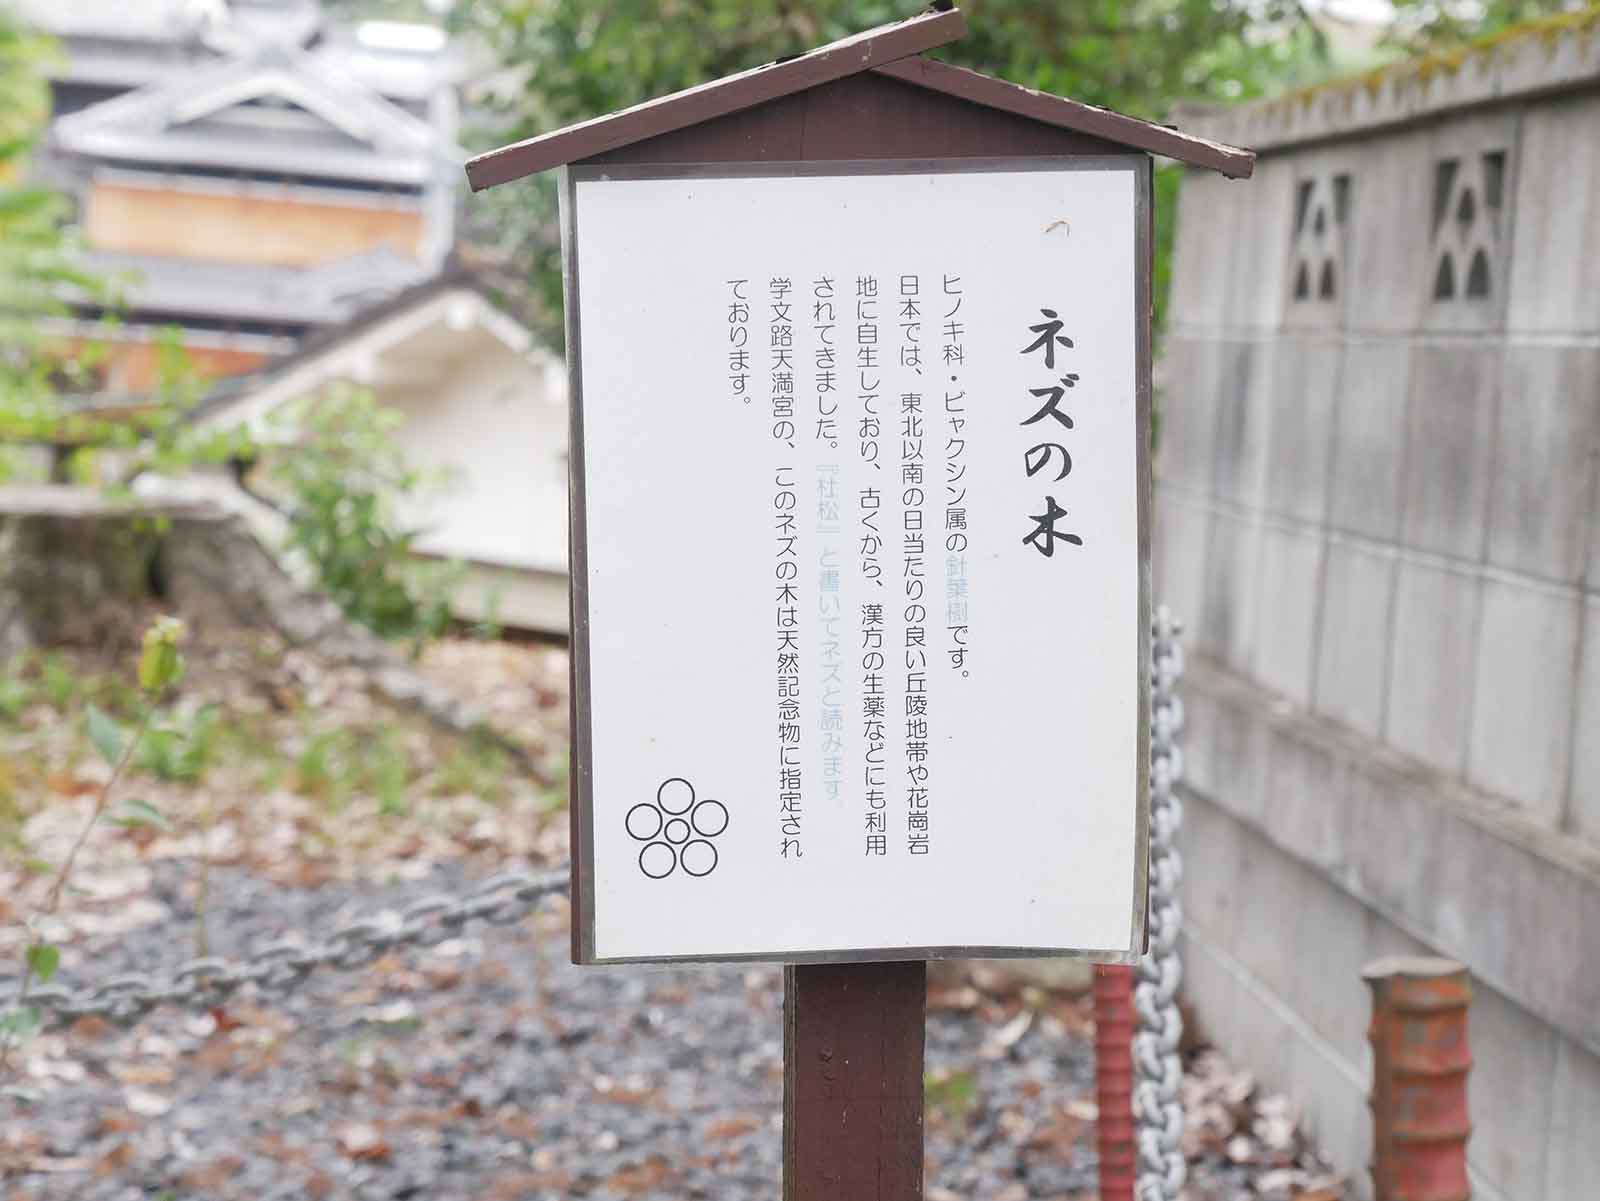 天満神社のネズ 巨樹名木探訪 8 樹木 木の情報発信基地